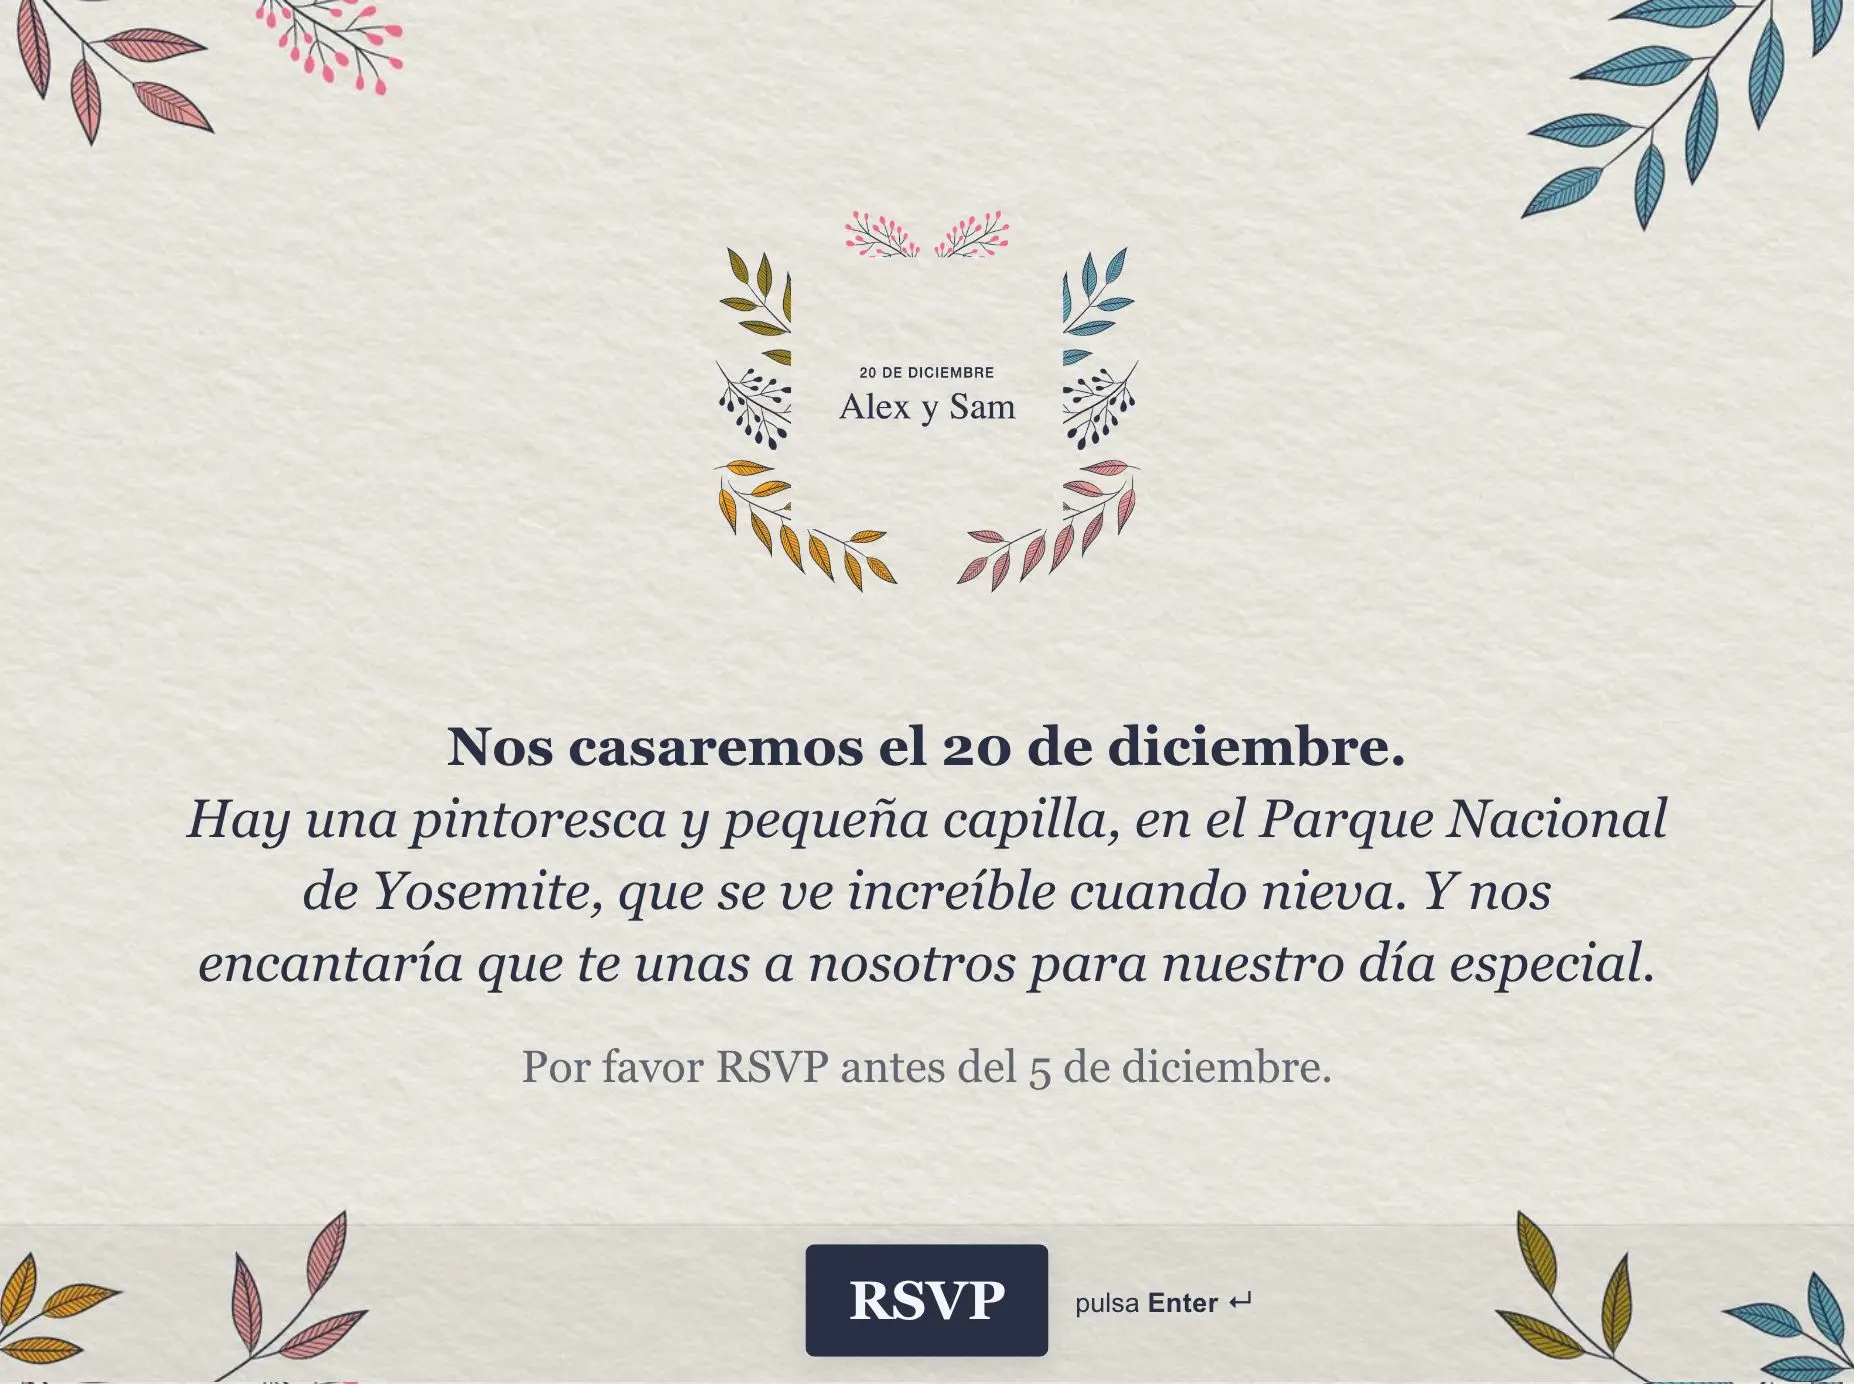 arrastrar Caucho compartir Plantilla Online y Gratis para Crear Invitaciones a Boda | Typeform